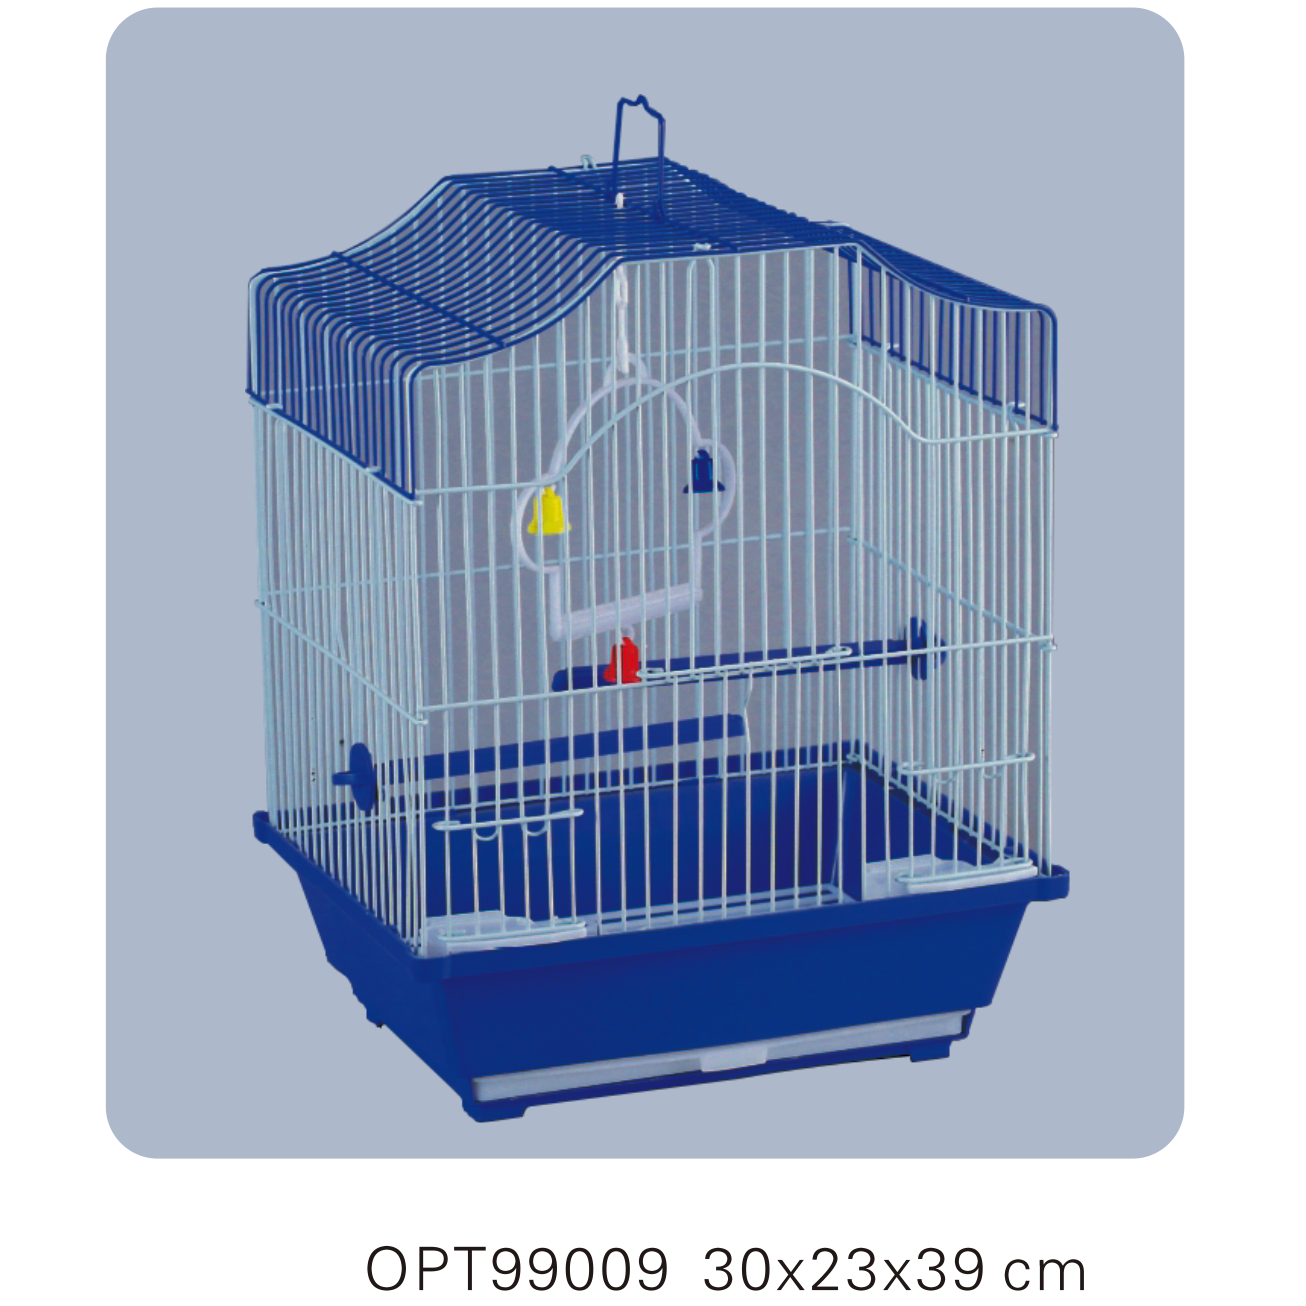 OPT99009 30x23x39cm Bird cages